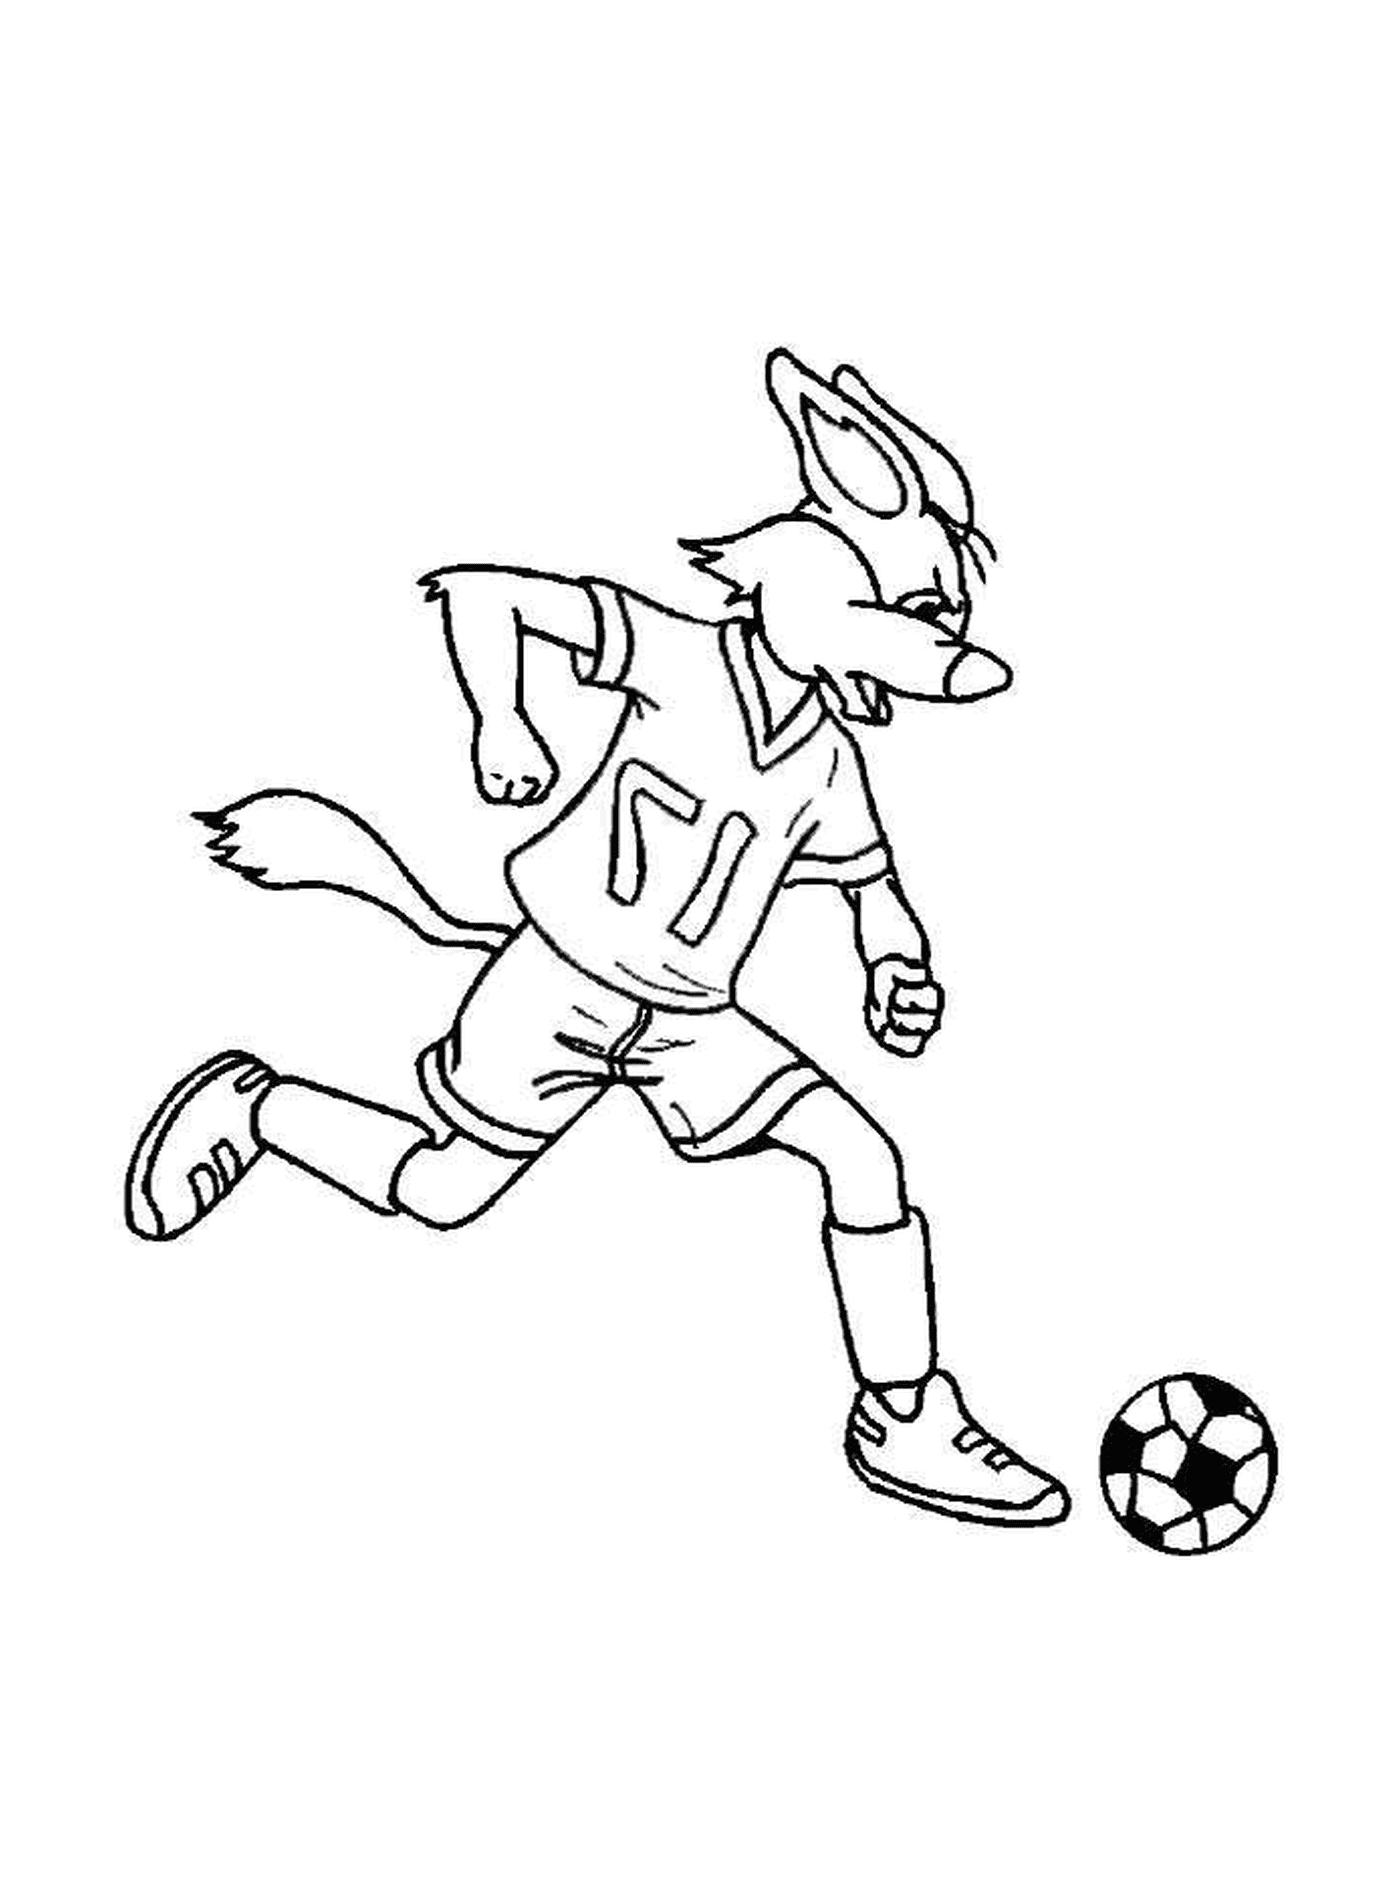  Un coniglio gioca a football 